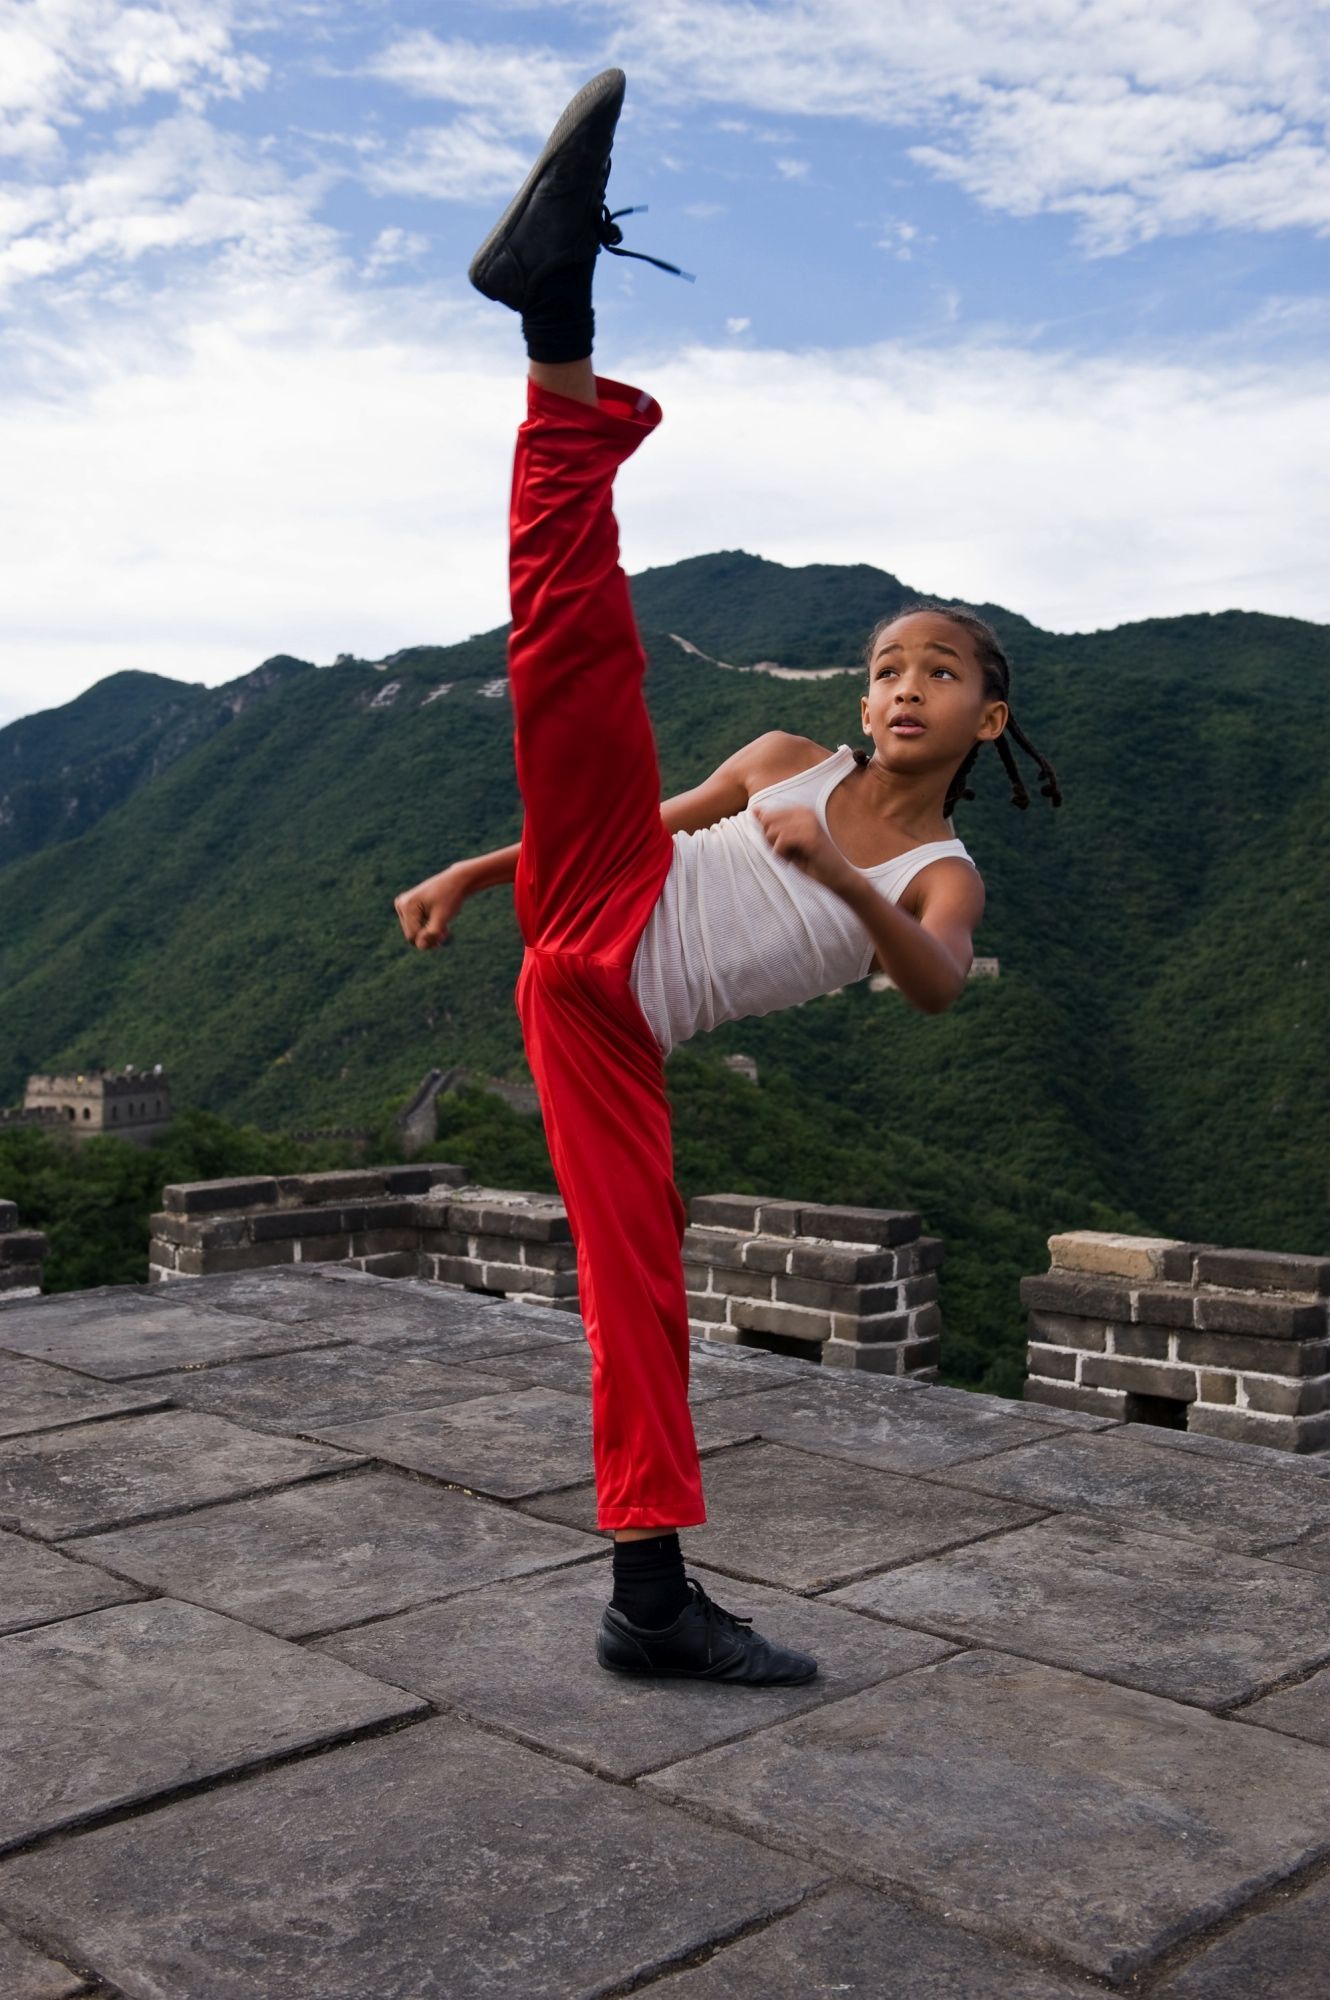 Jaden Smith in the Karate Kid